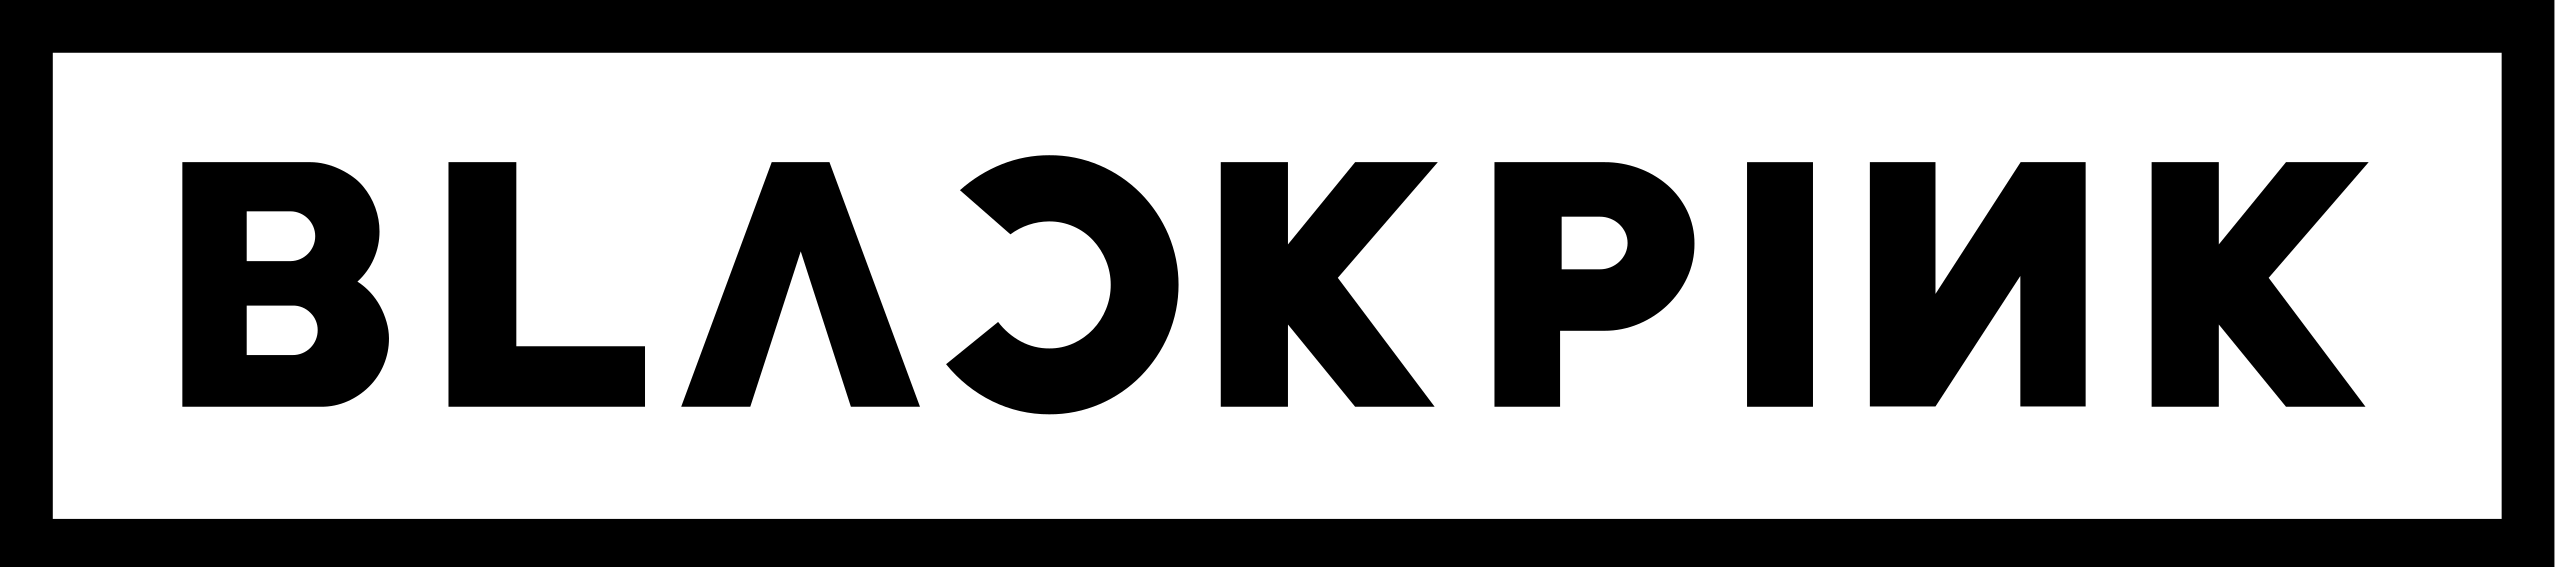 Logo of Blackpink - Logo của BLACKPINK được thiết kế rất đẹp mắt và đặc biệt, nó được truyền tải thông điệp mạnh mẽ về sự độc lập, sự nữ quyền và sự tự tin. Hãy khám phá những hình ảnh về Logo của BLACKPINK để hiểu rõ hơn về nhóm nhạc này.